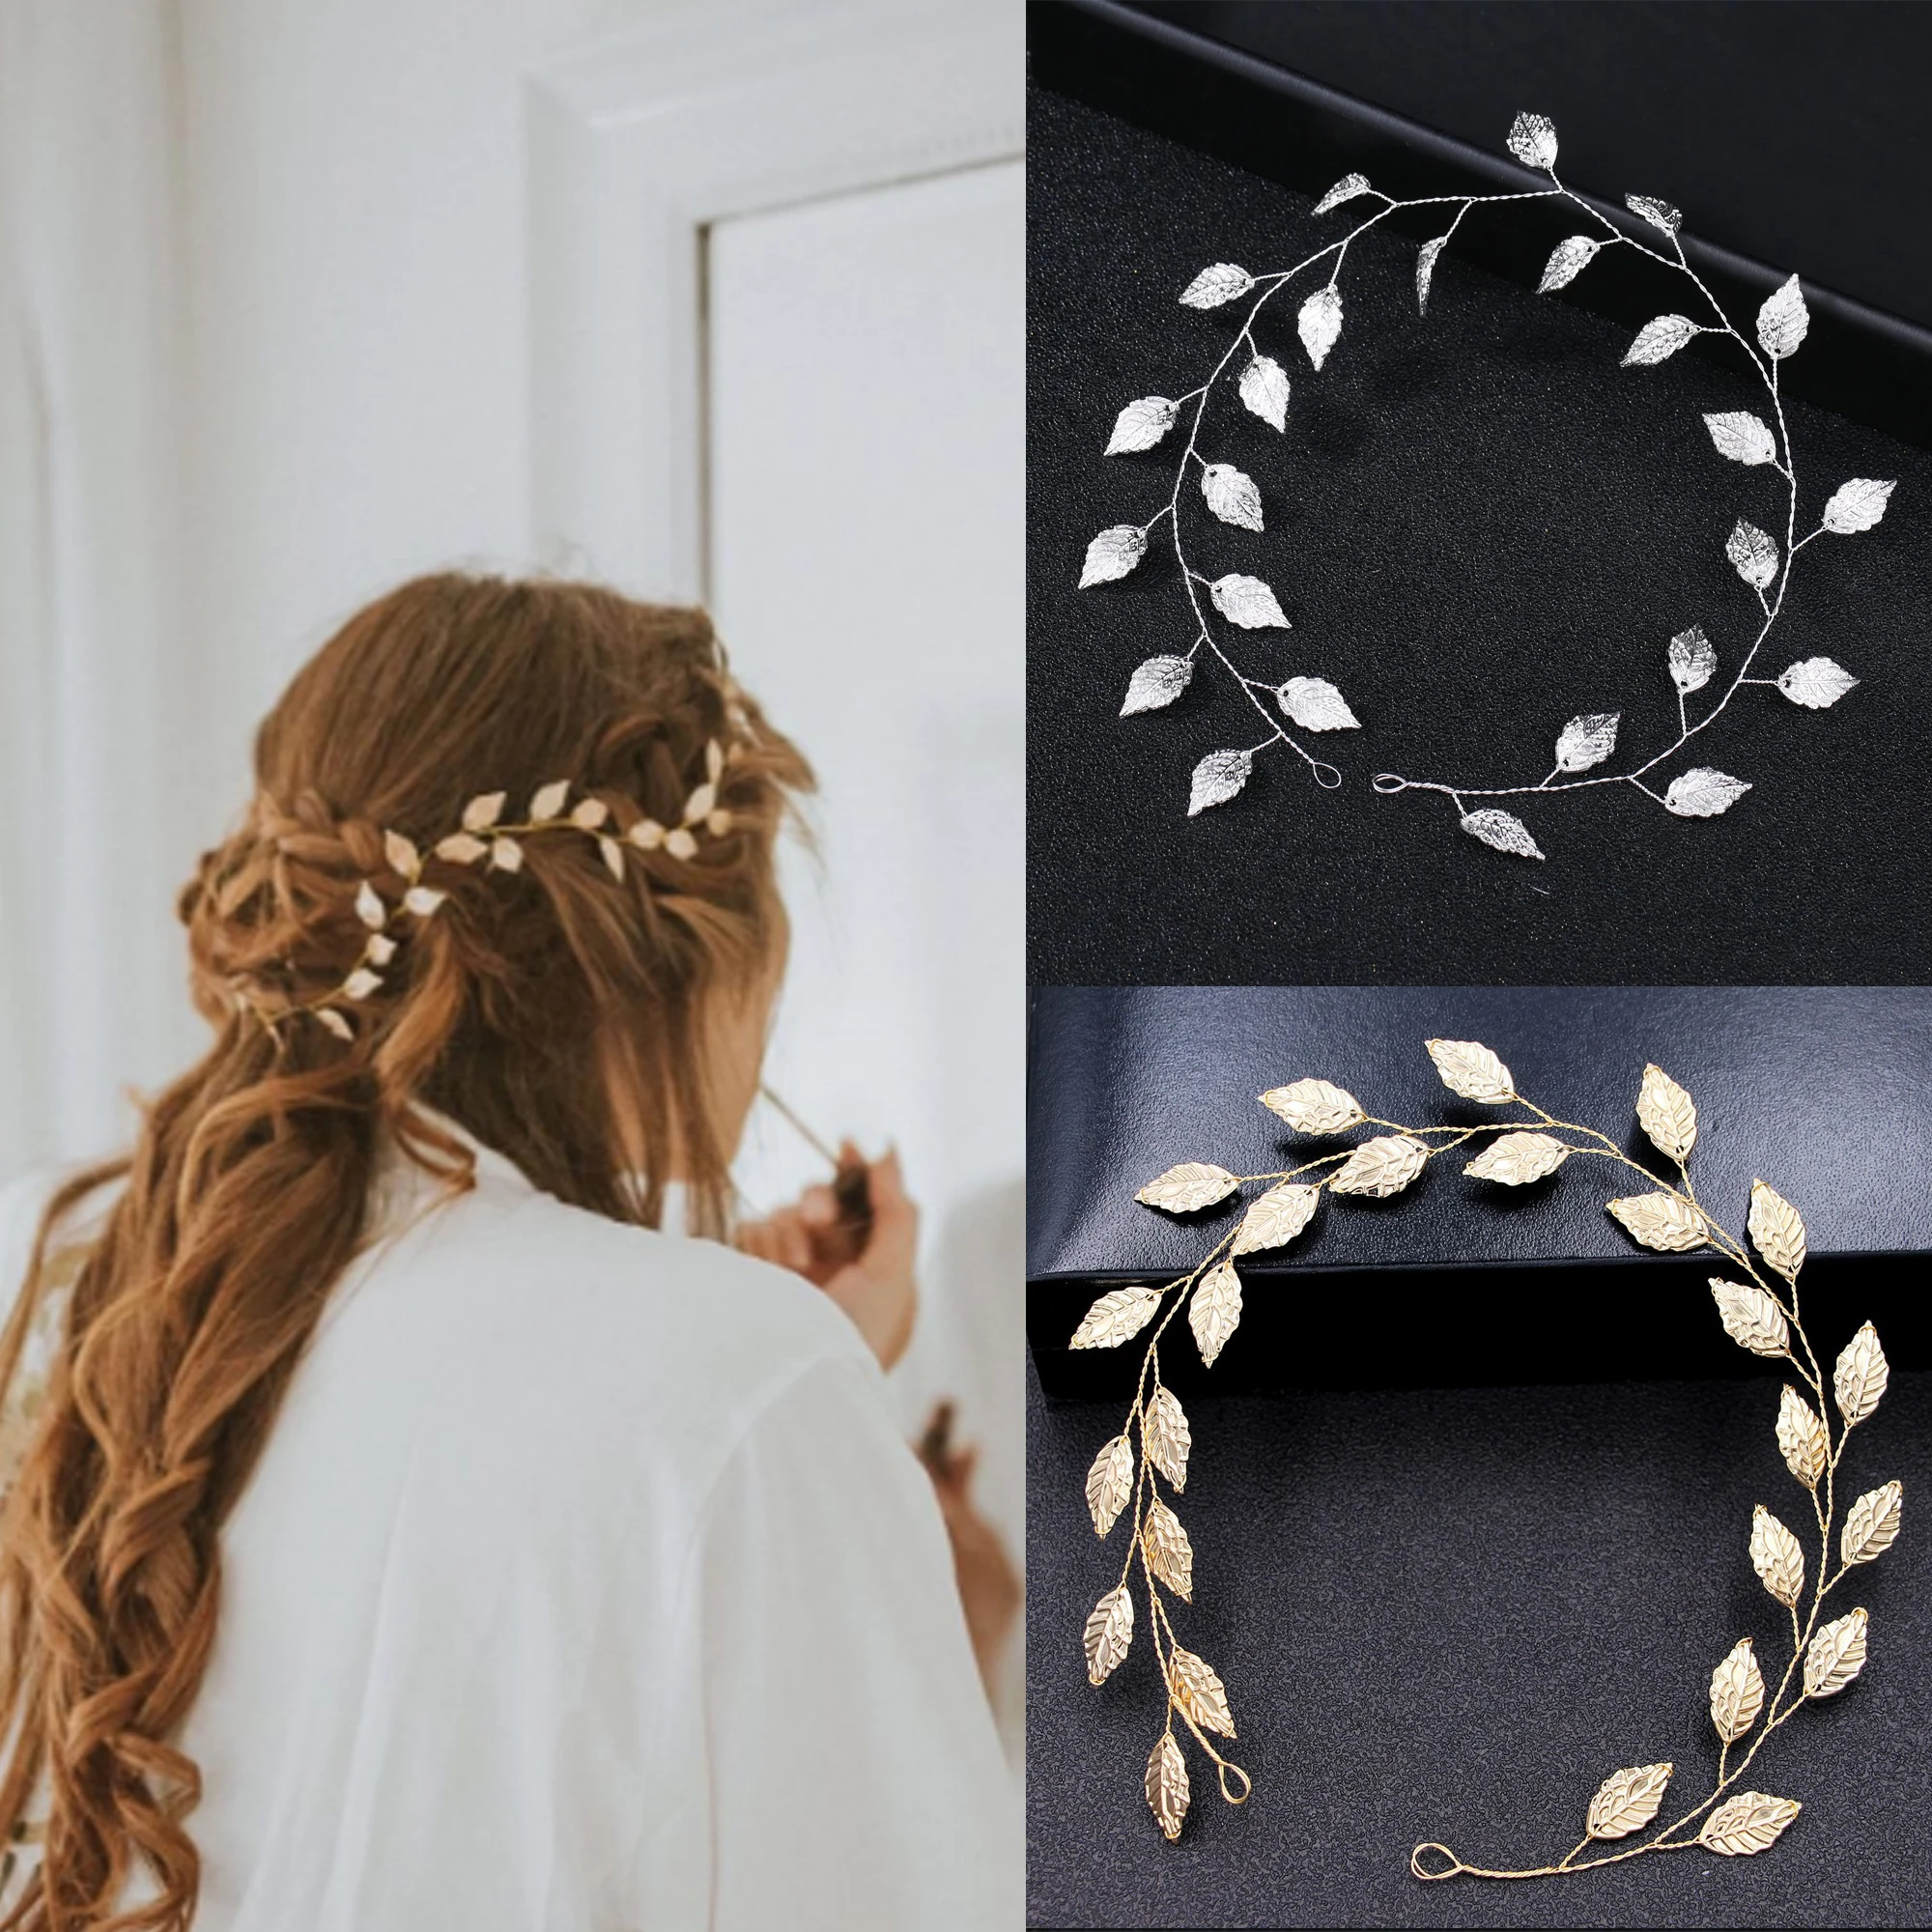 Women Bridal Tiaras Headbands Hair Accessories Jewelry Leaf Headdress Ornaments